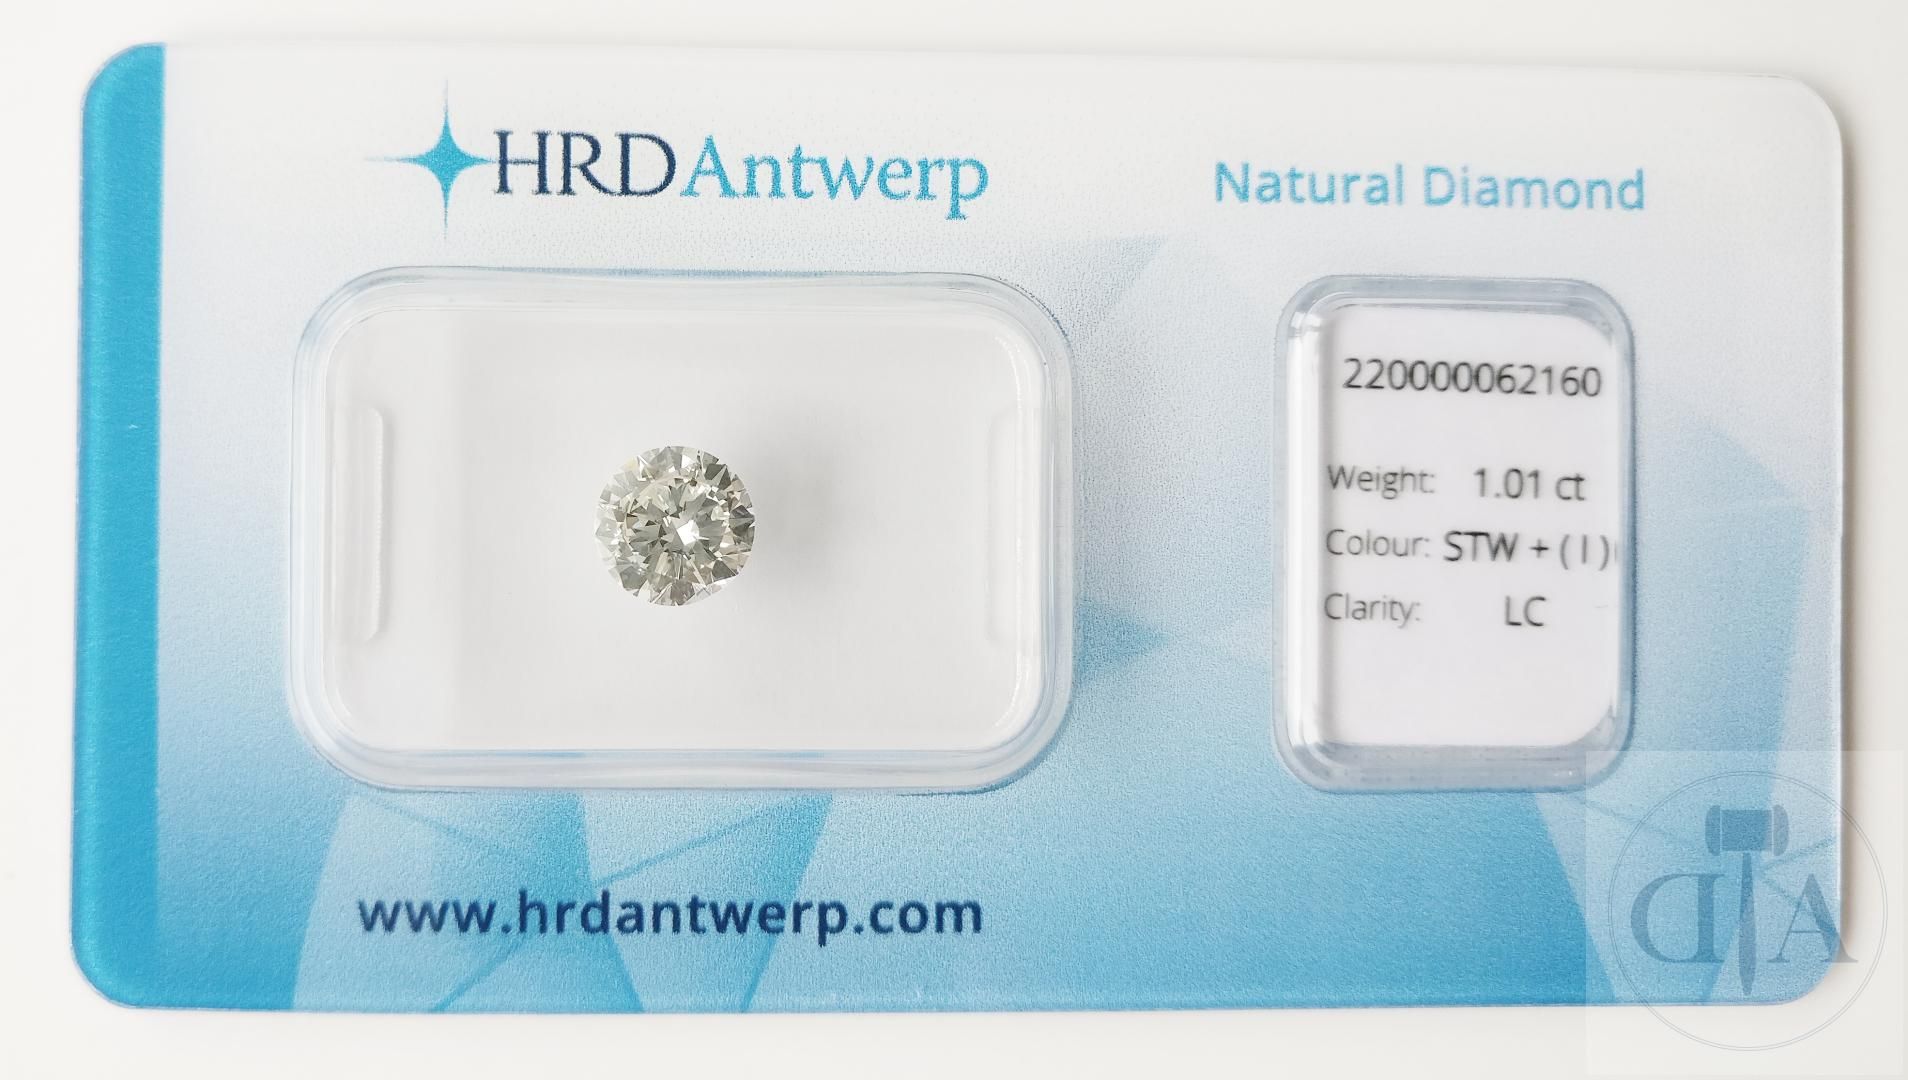 Null 经 HRD 认证的 1.01 克拉顶级钻石

- HRD 证书编号：220000062160 
- 形状：圆形明亮式切割圆形明亮式切割
- 克拉重量：&hellip;